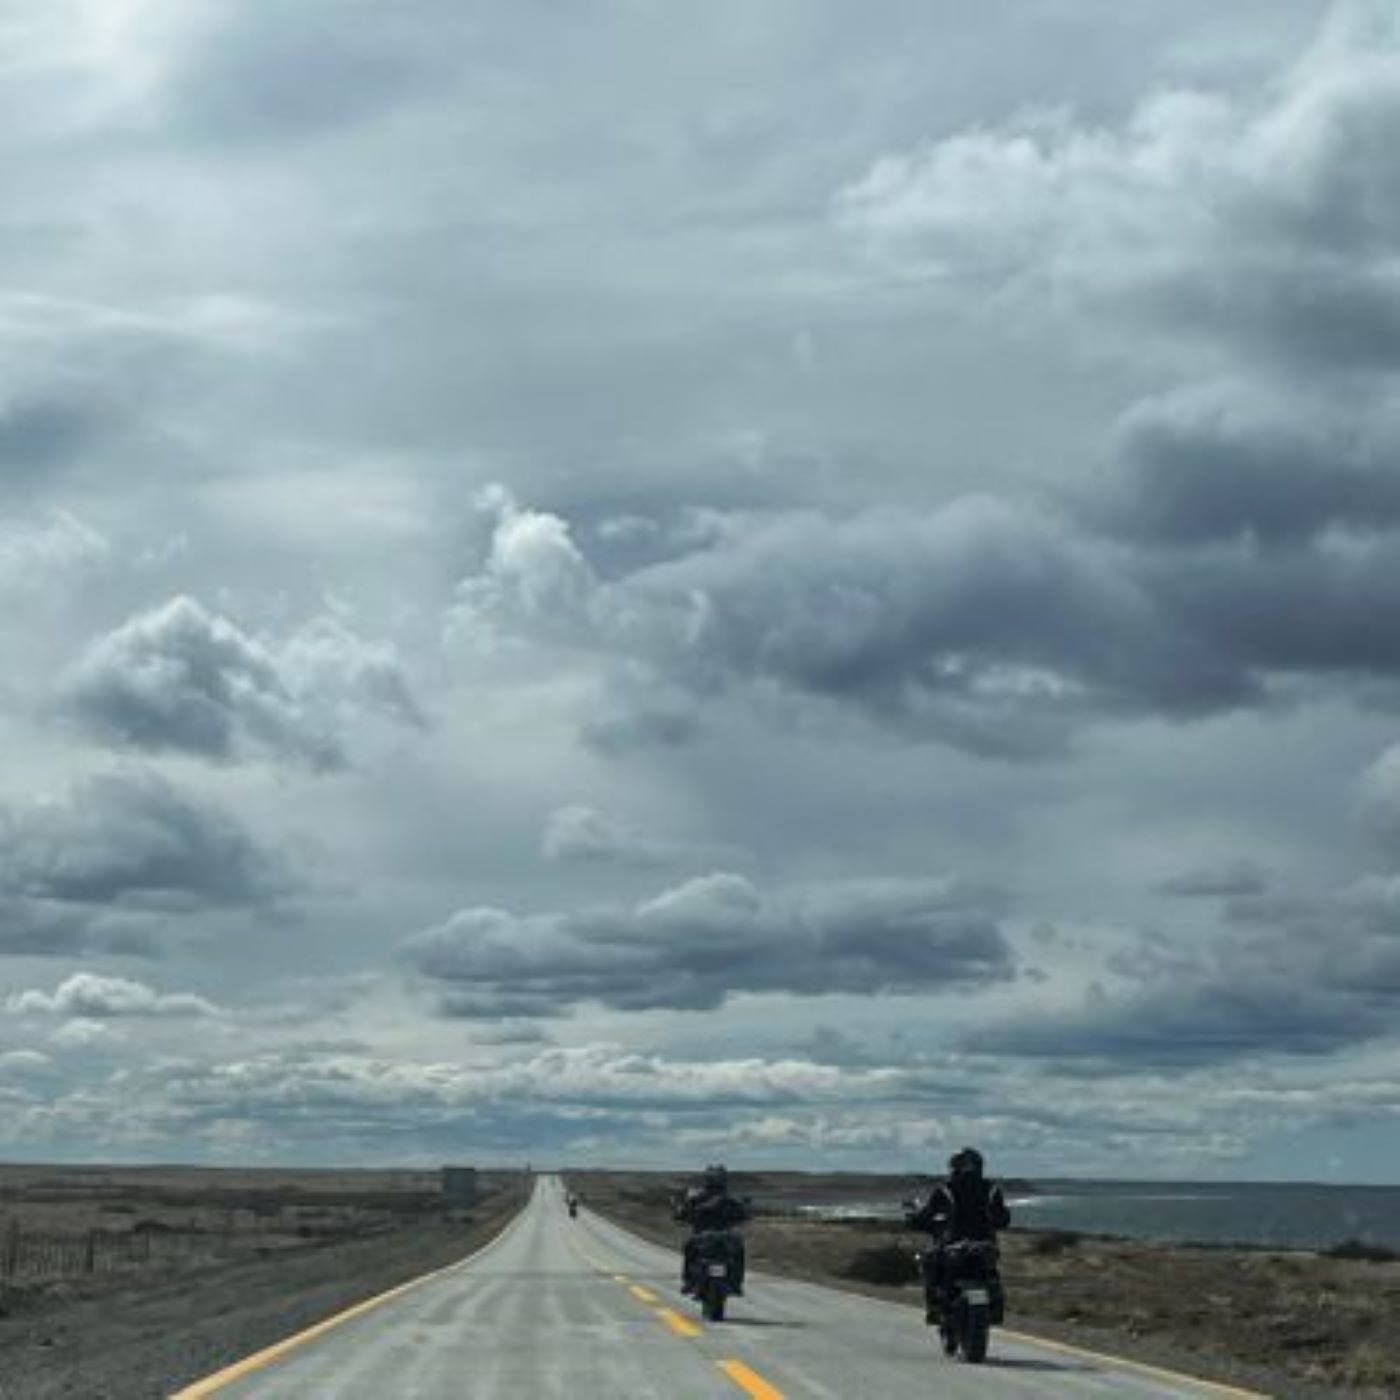 Rodada Punta Arenas – San Gregorio conmemoró histórica carrera de motos en Magallanes